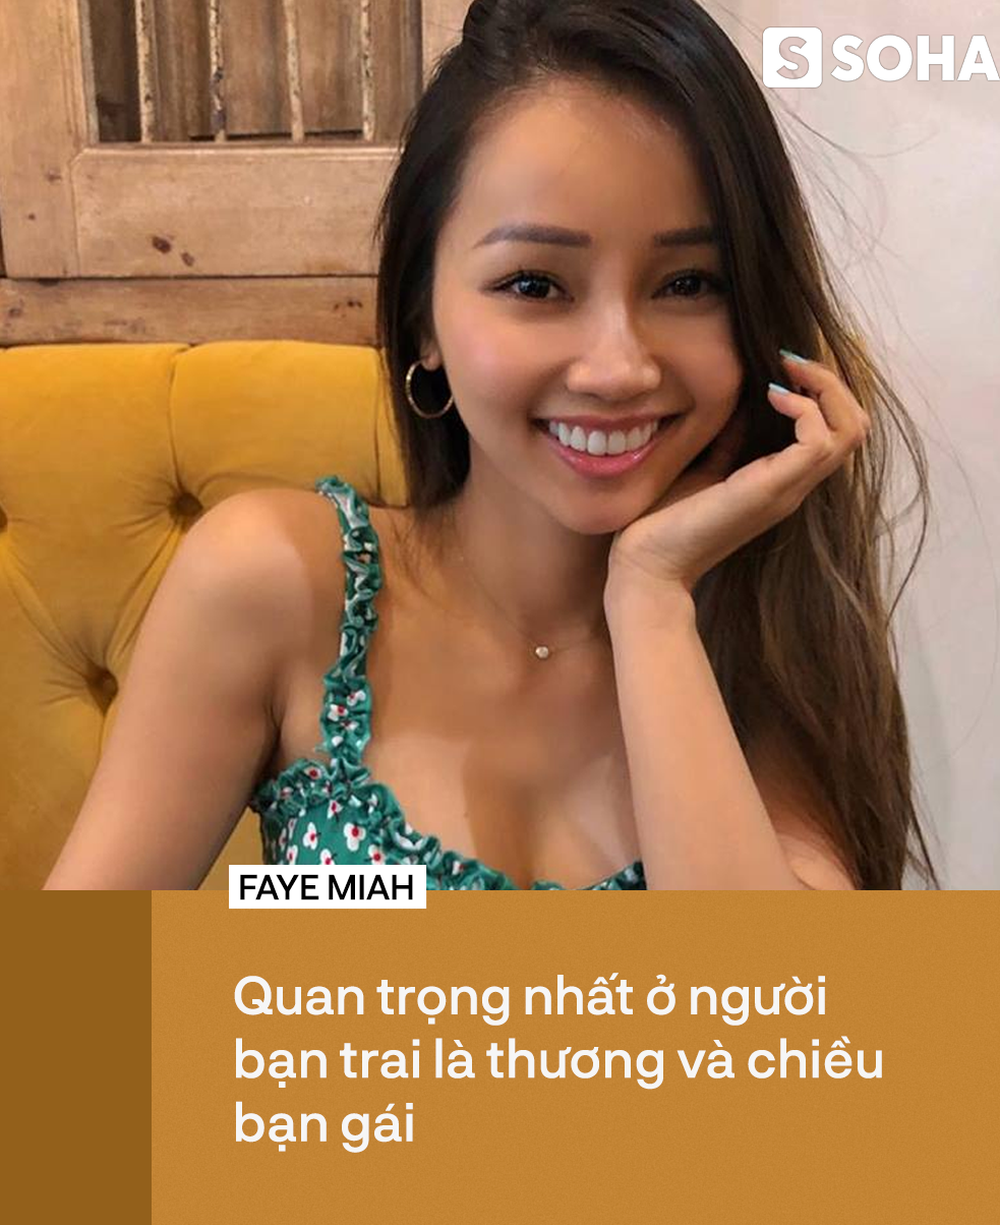 Nữ thạc sĩ gốc Việt với thân hình nóng bỏng nổi tiếng khắp thế giới tiết lộ bí mật bất ngờ - Ảnh 6.